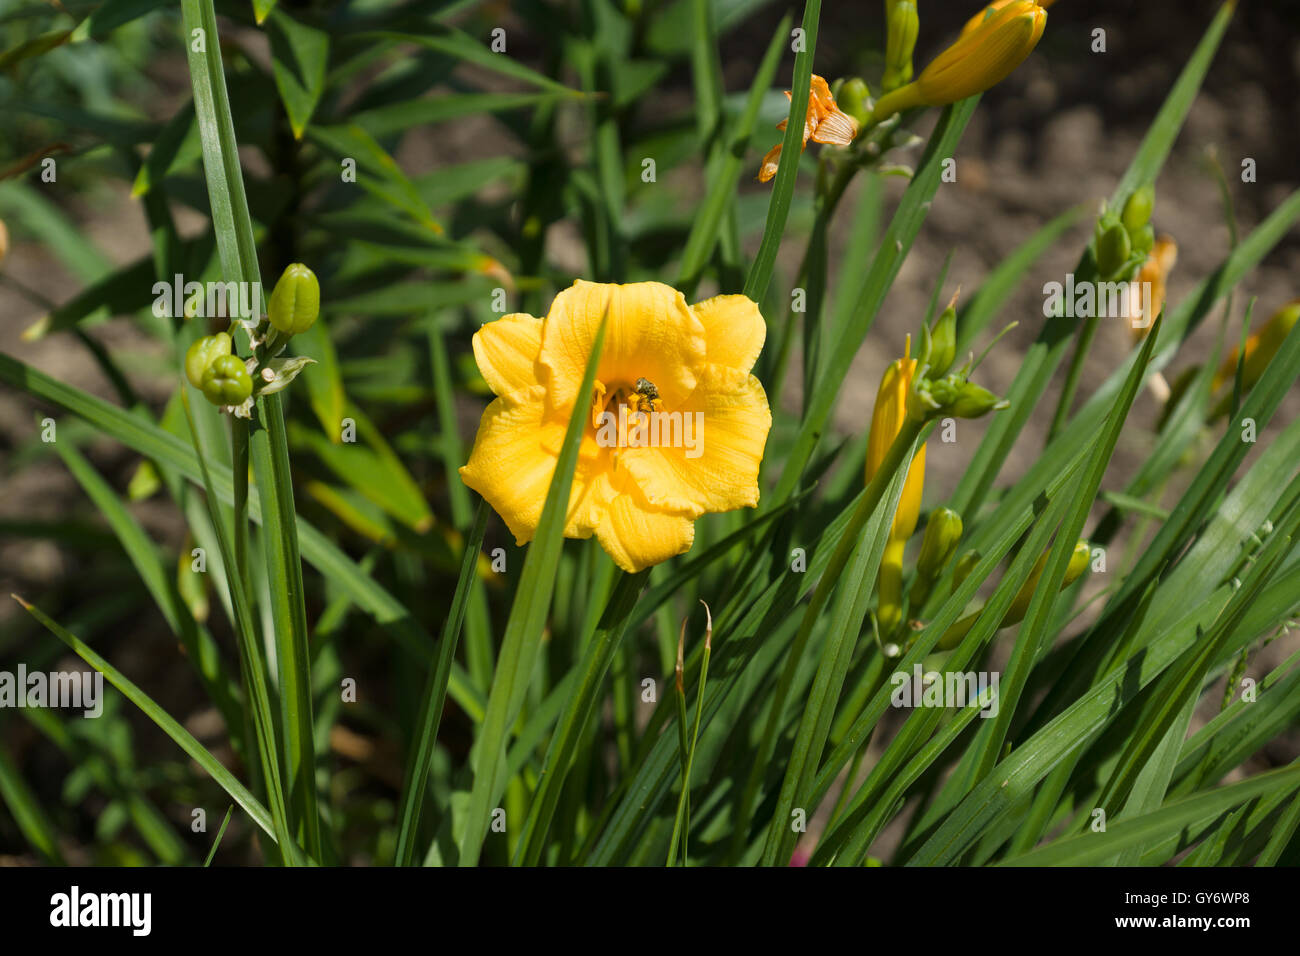 die gelbe Blume blühte unter dem grünen Rasen Stockfoto